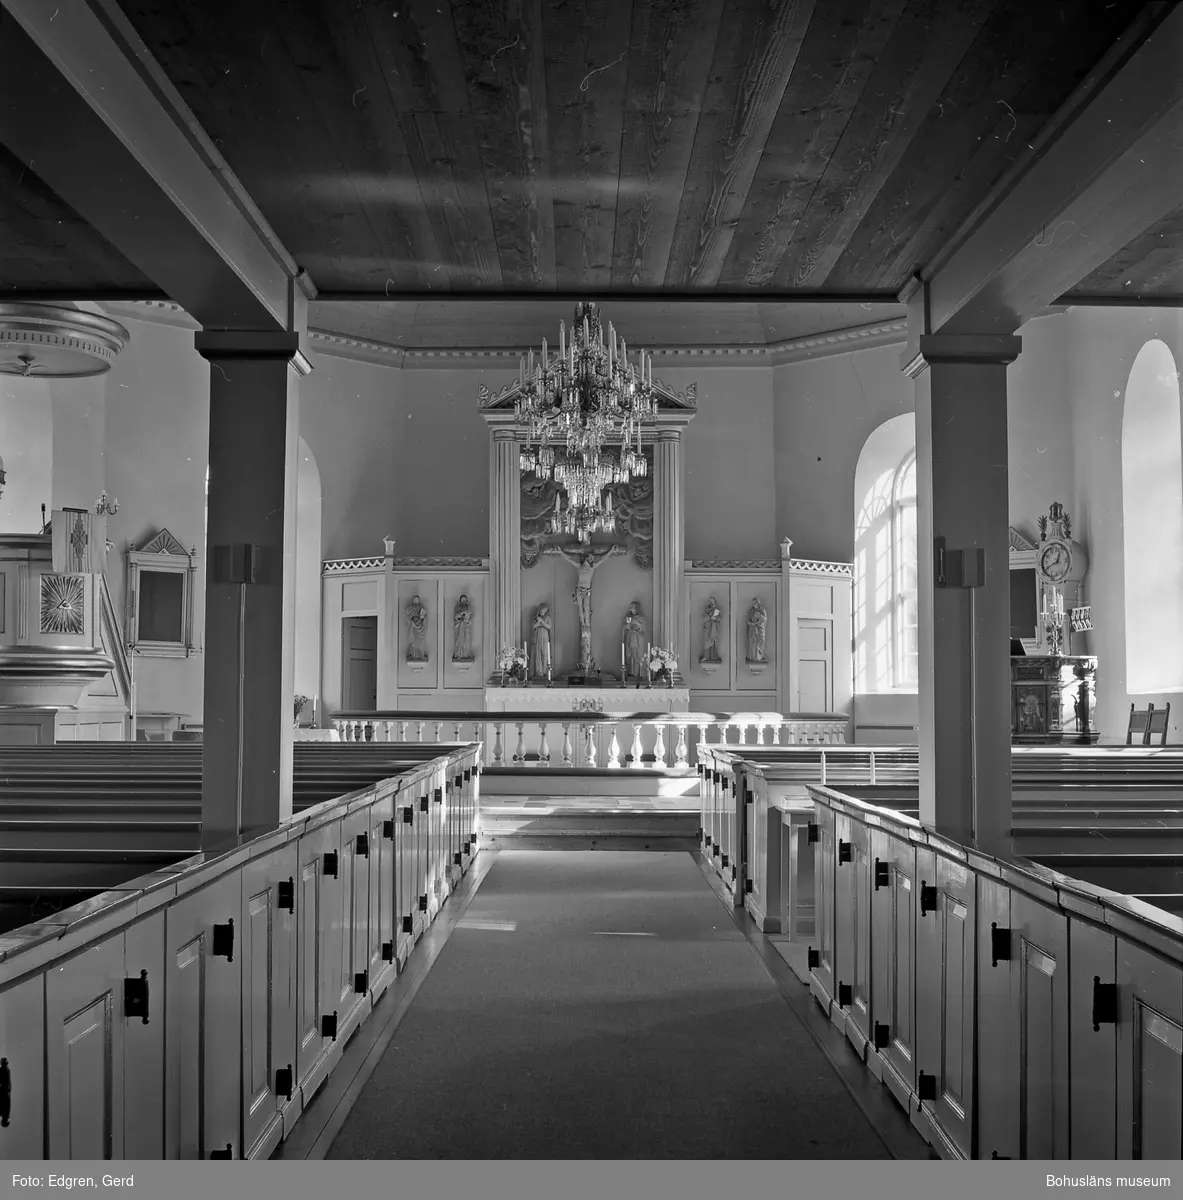 Text till bilden: "Röra kyrka. Interiör mot koret".